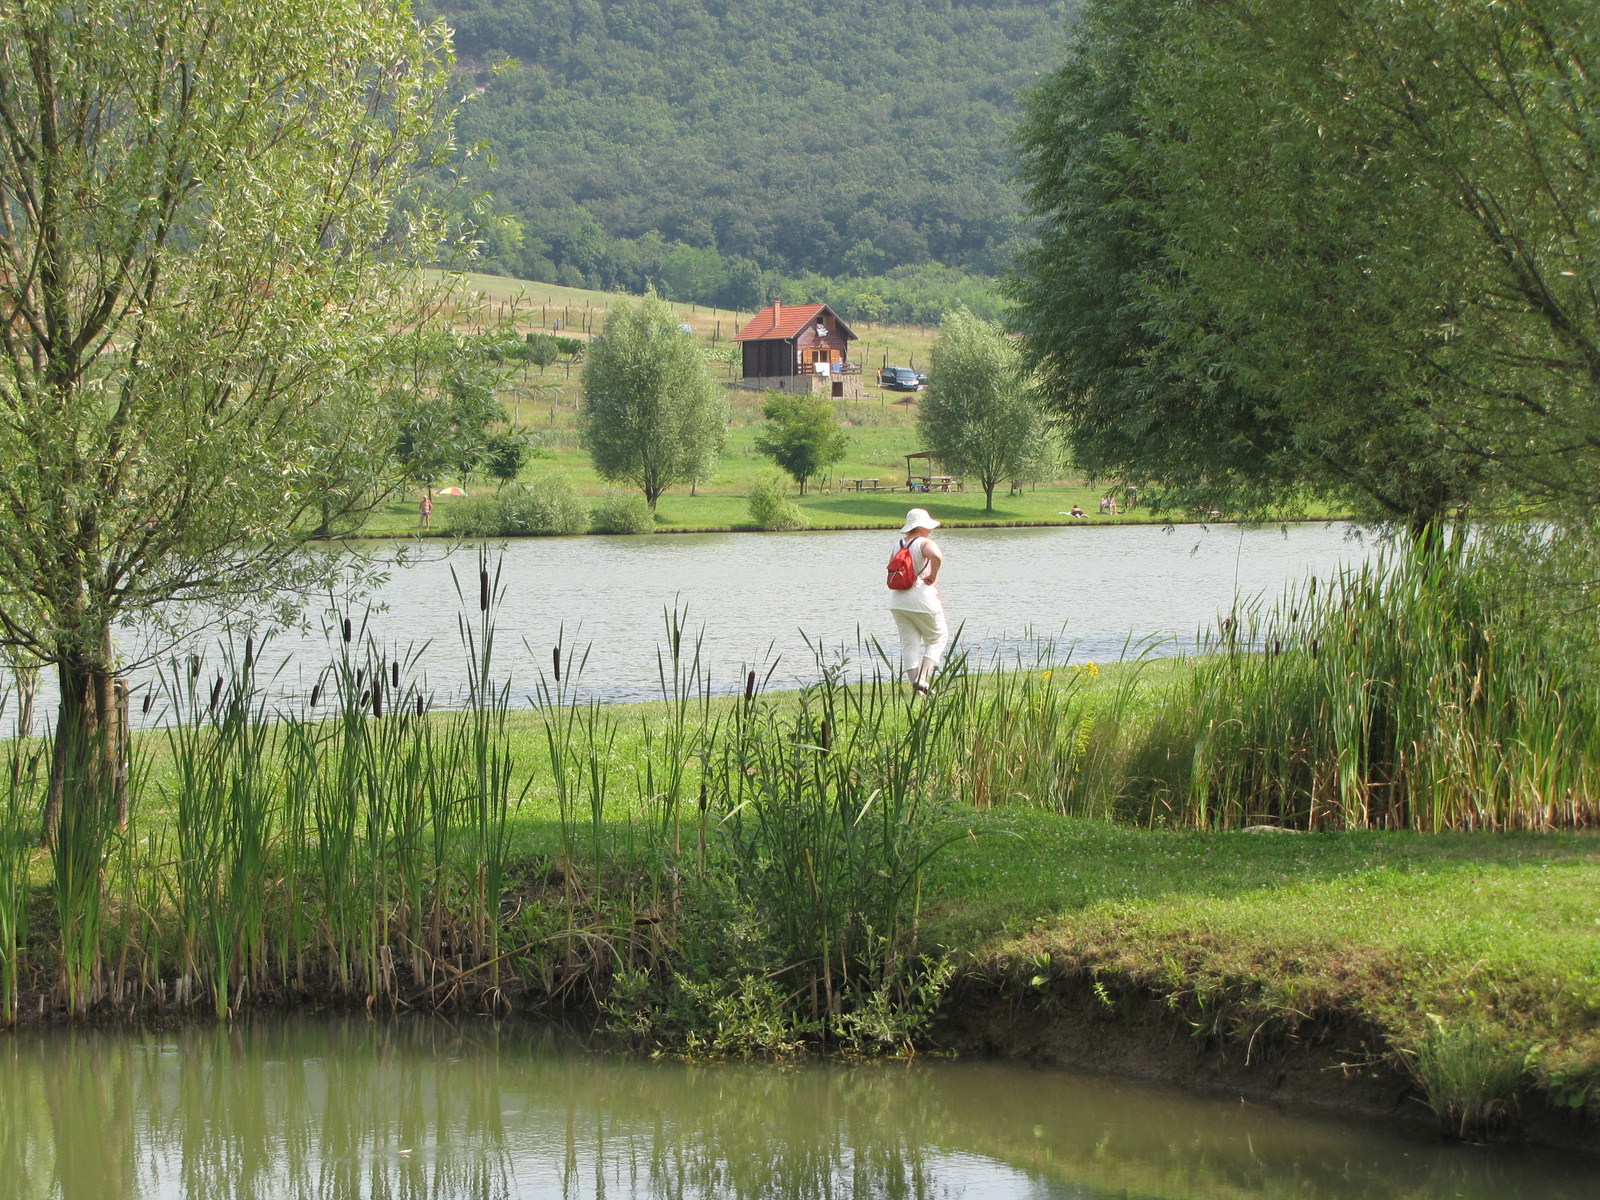 Alsópetény, Cser tó (Petényi patak), SzG3